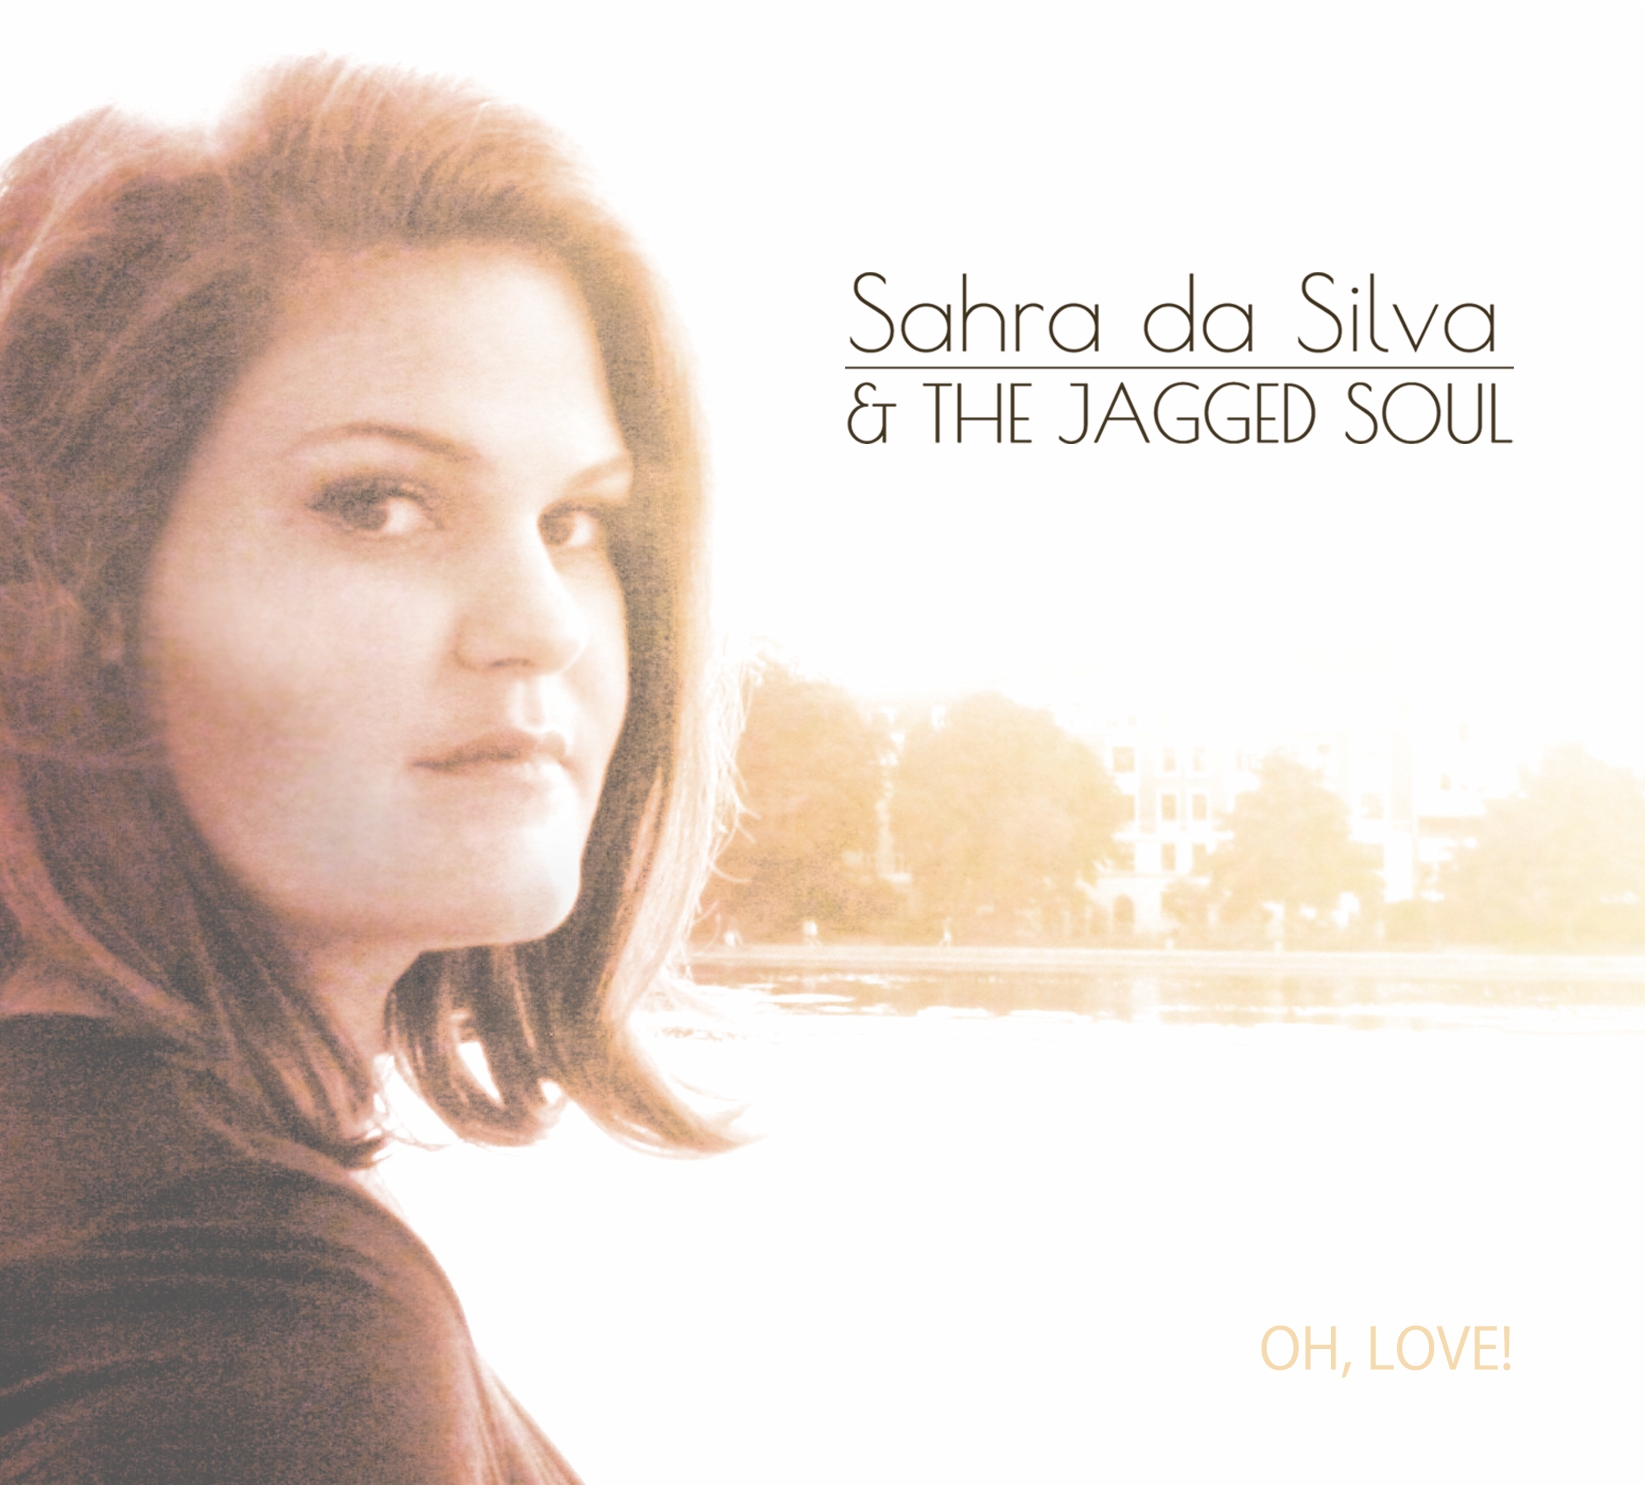 Sahra da Silva 
& the Jagged Soul
IKKE ryger koncert